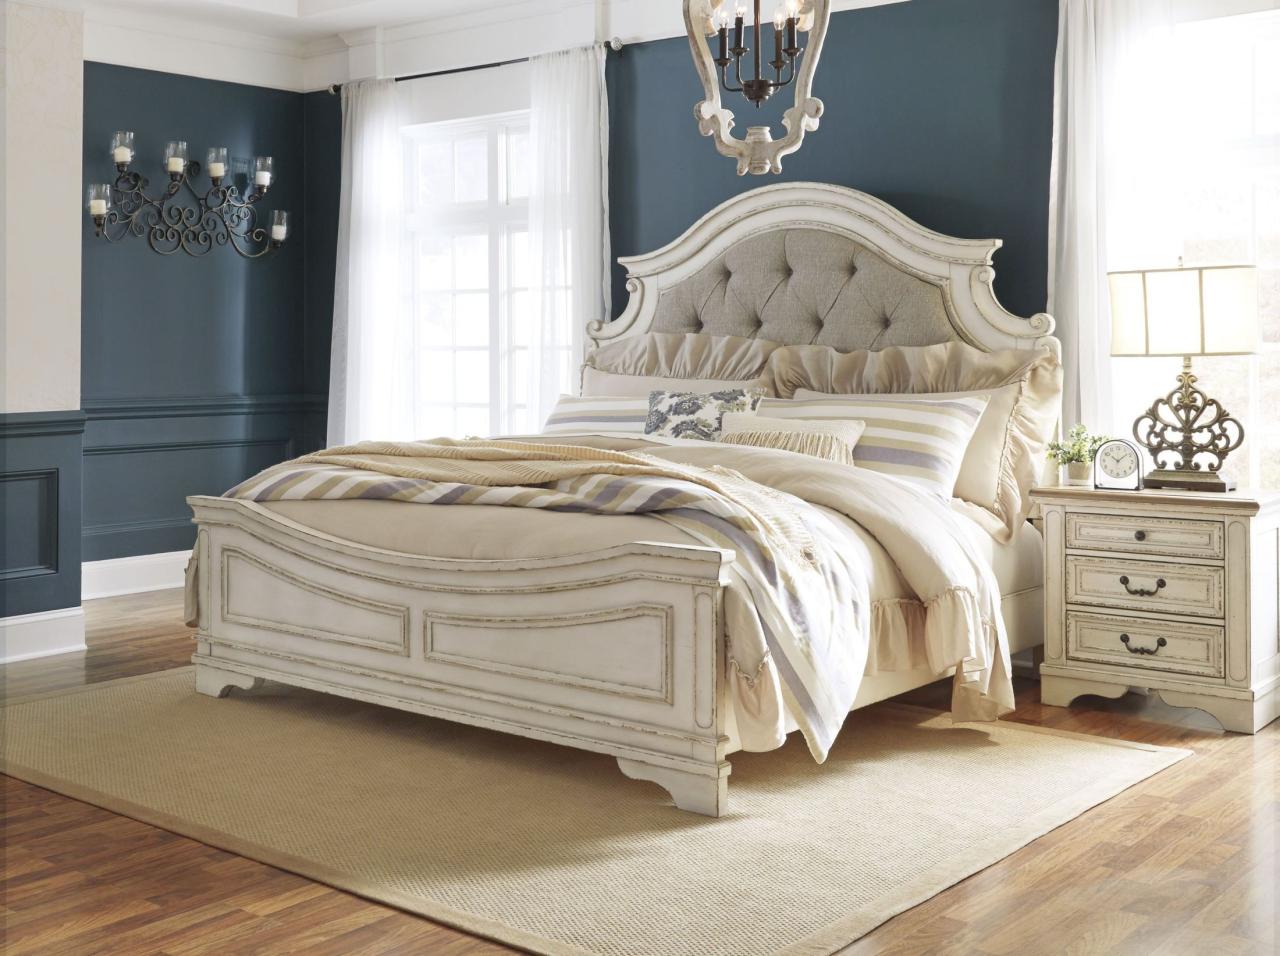 Realyn bedroom furniture